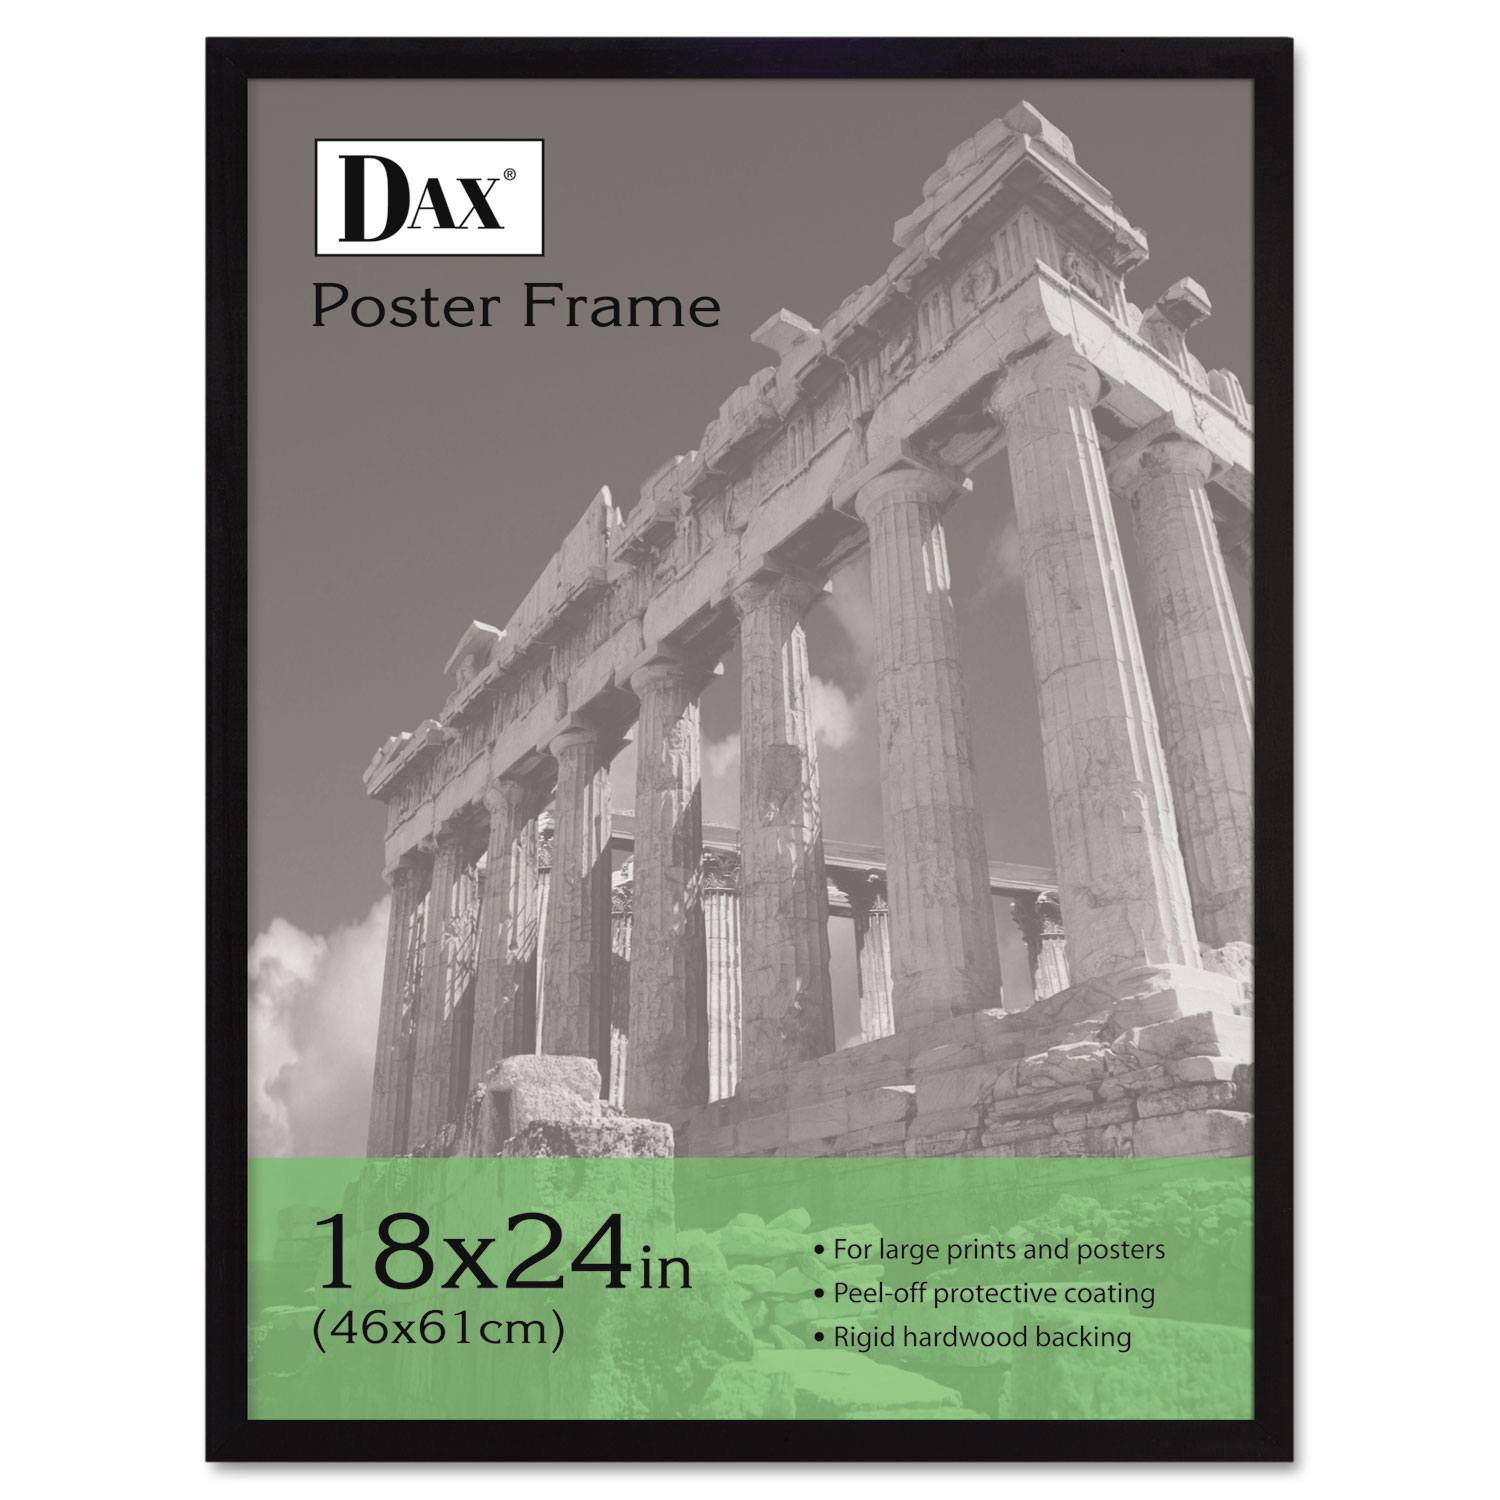  DAX 2860W2X Flat Face Wood Poster Frame, Clear Plastic Window, 18 x 24, Black Border (DAX2860W2X) 